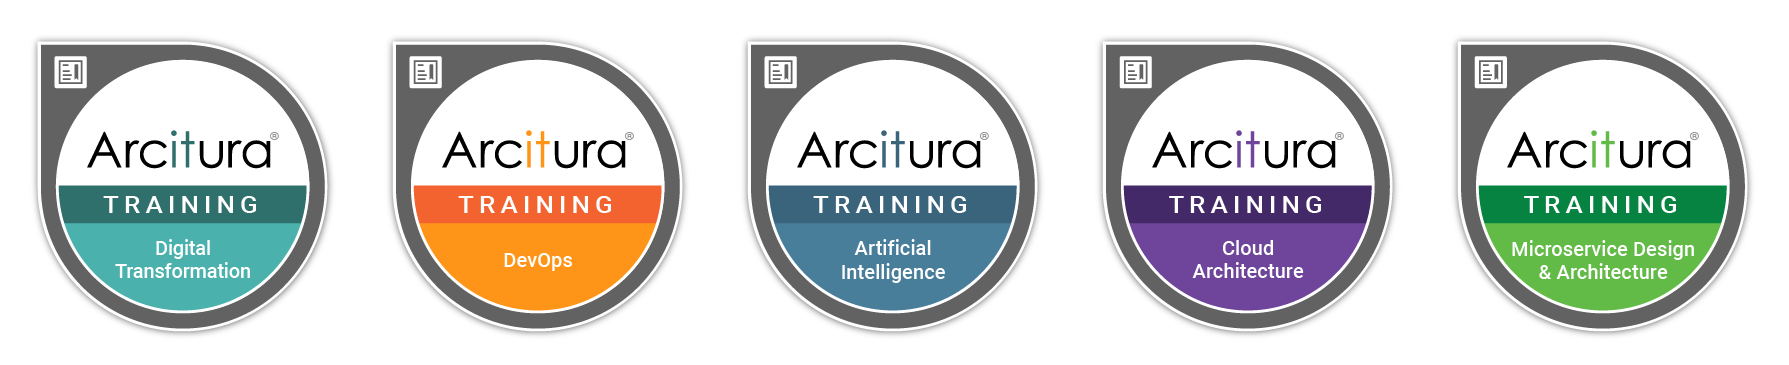 Arcitura Digital Training Badges